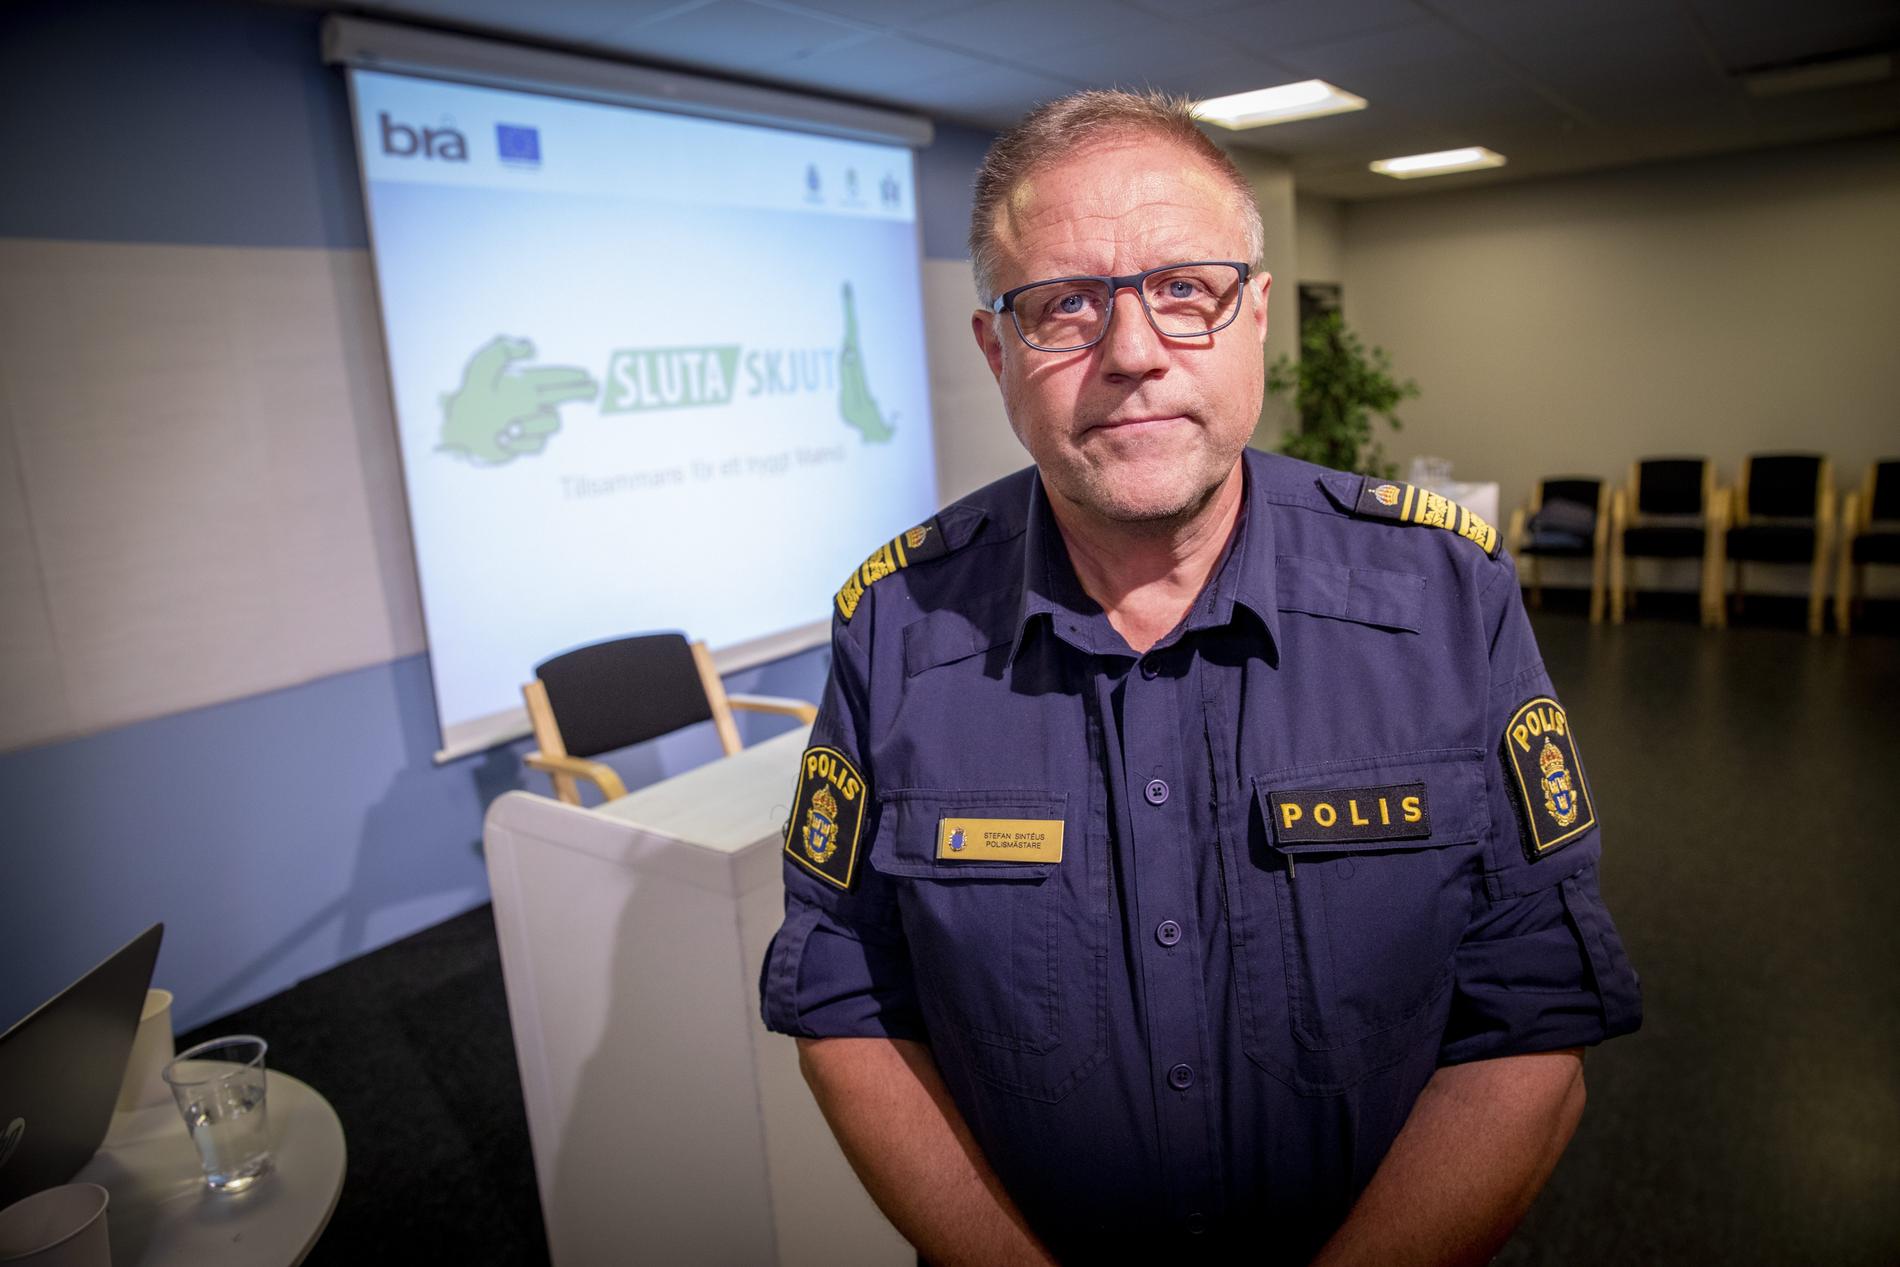 Stefan Sintéus, polisområdeschef i Malmö, under en presskonferens om projektet "Sluta skjut" i Malmö.